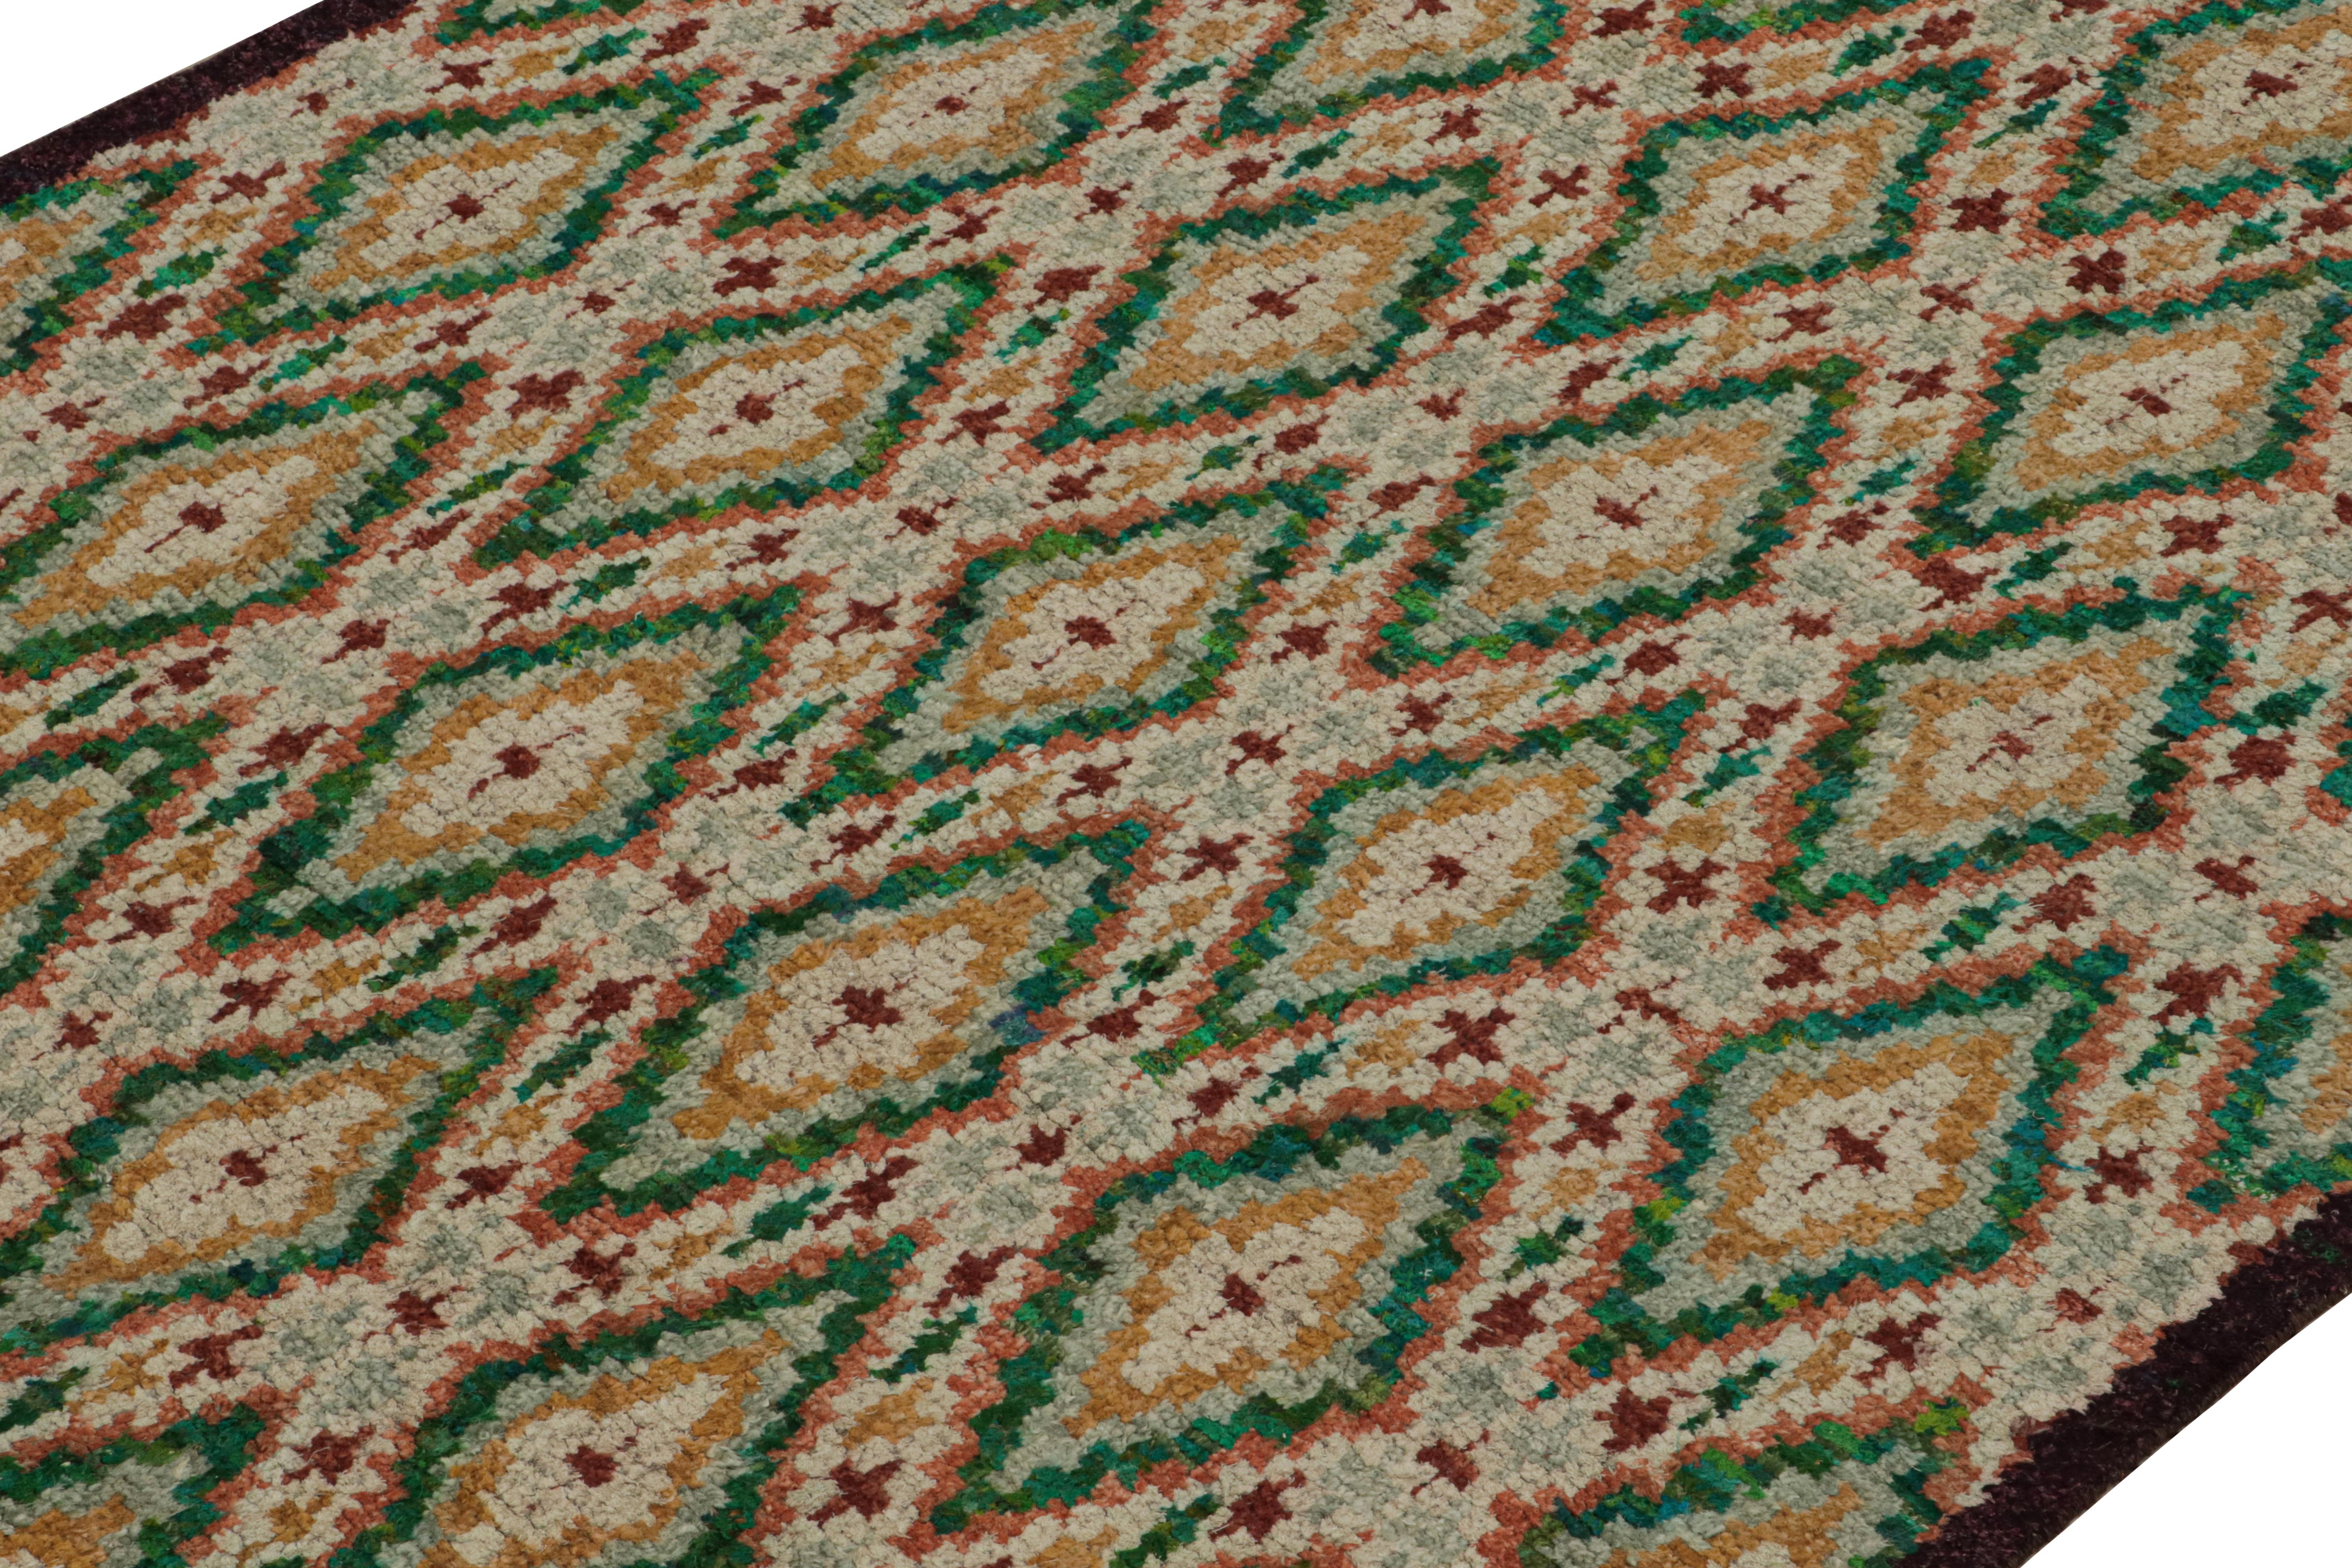 Indien Rug & Kilim's Modernity Moroccan Style Rug in Green & Gold Geometric Patterns (tapis de style marocain moderne avec des motifs géométriques verts et dorés) en vente